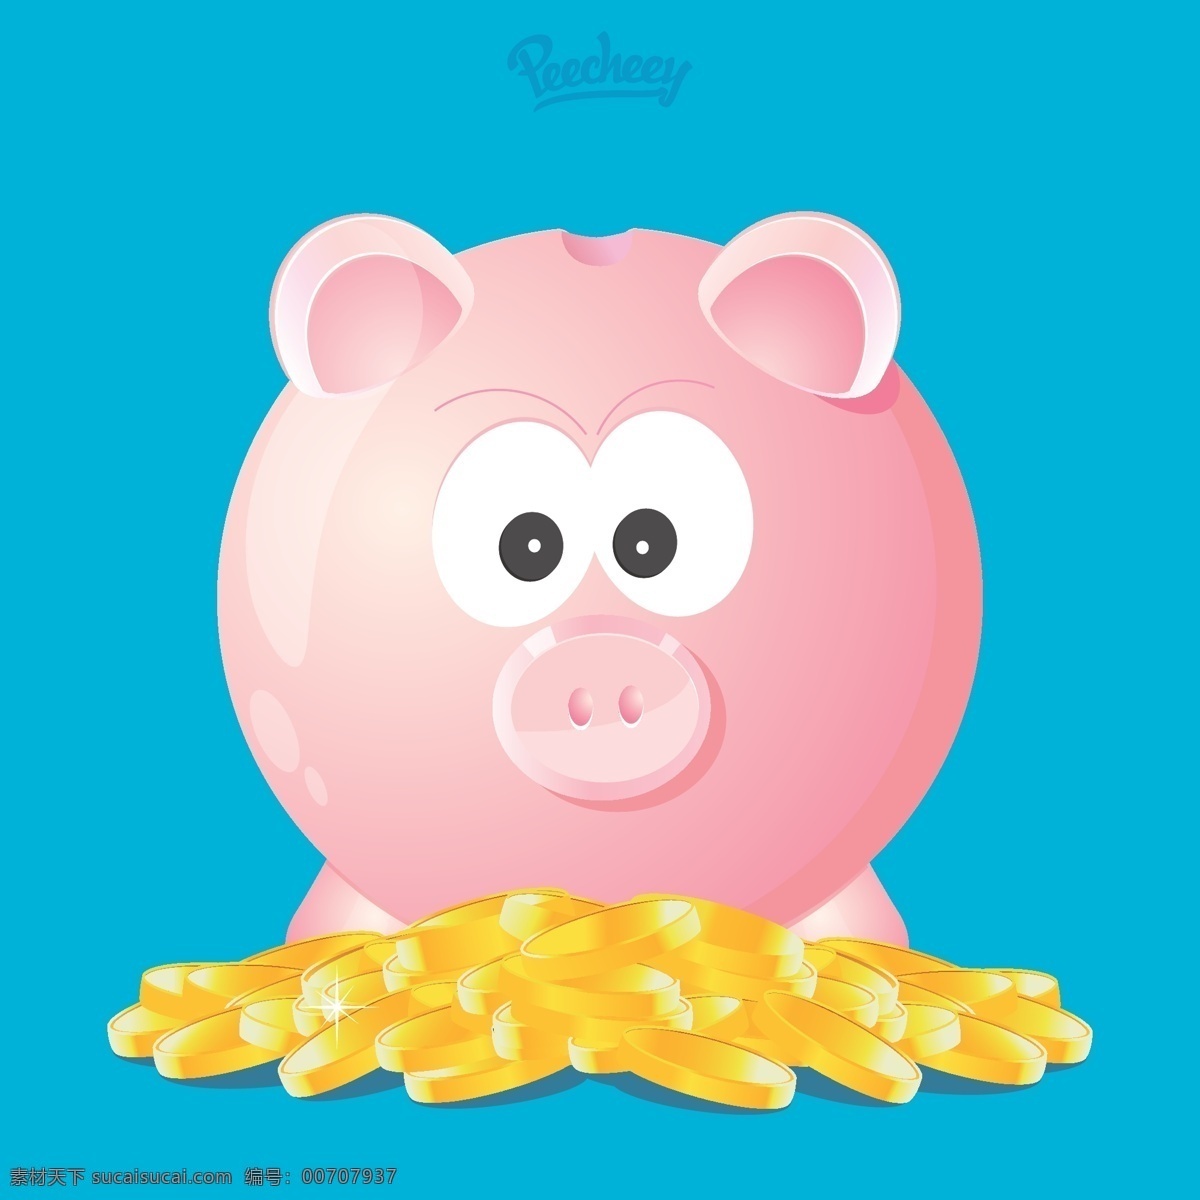 带 金币 粉红色 小 猪 储蓄罐 高清 图 青色 天蓝色